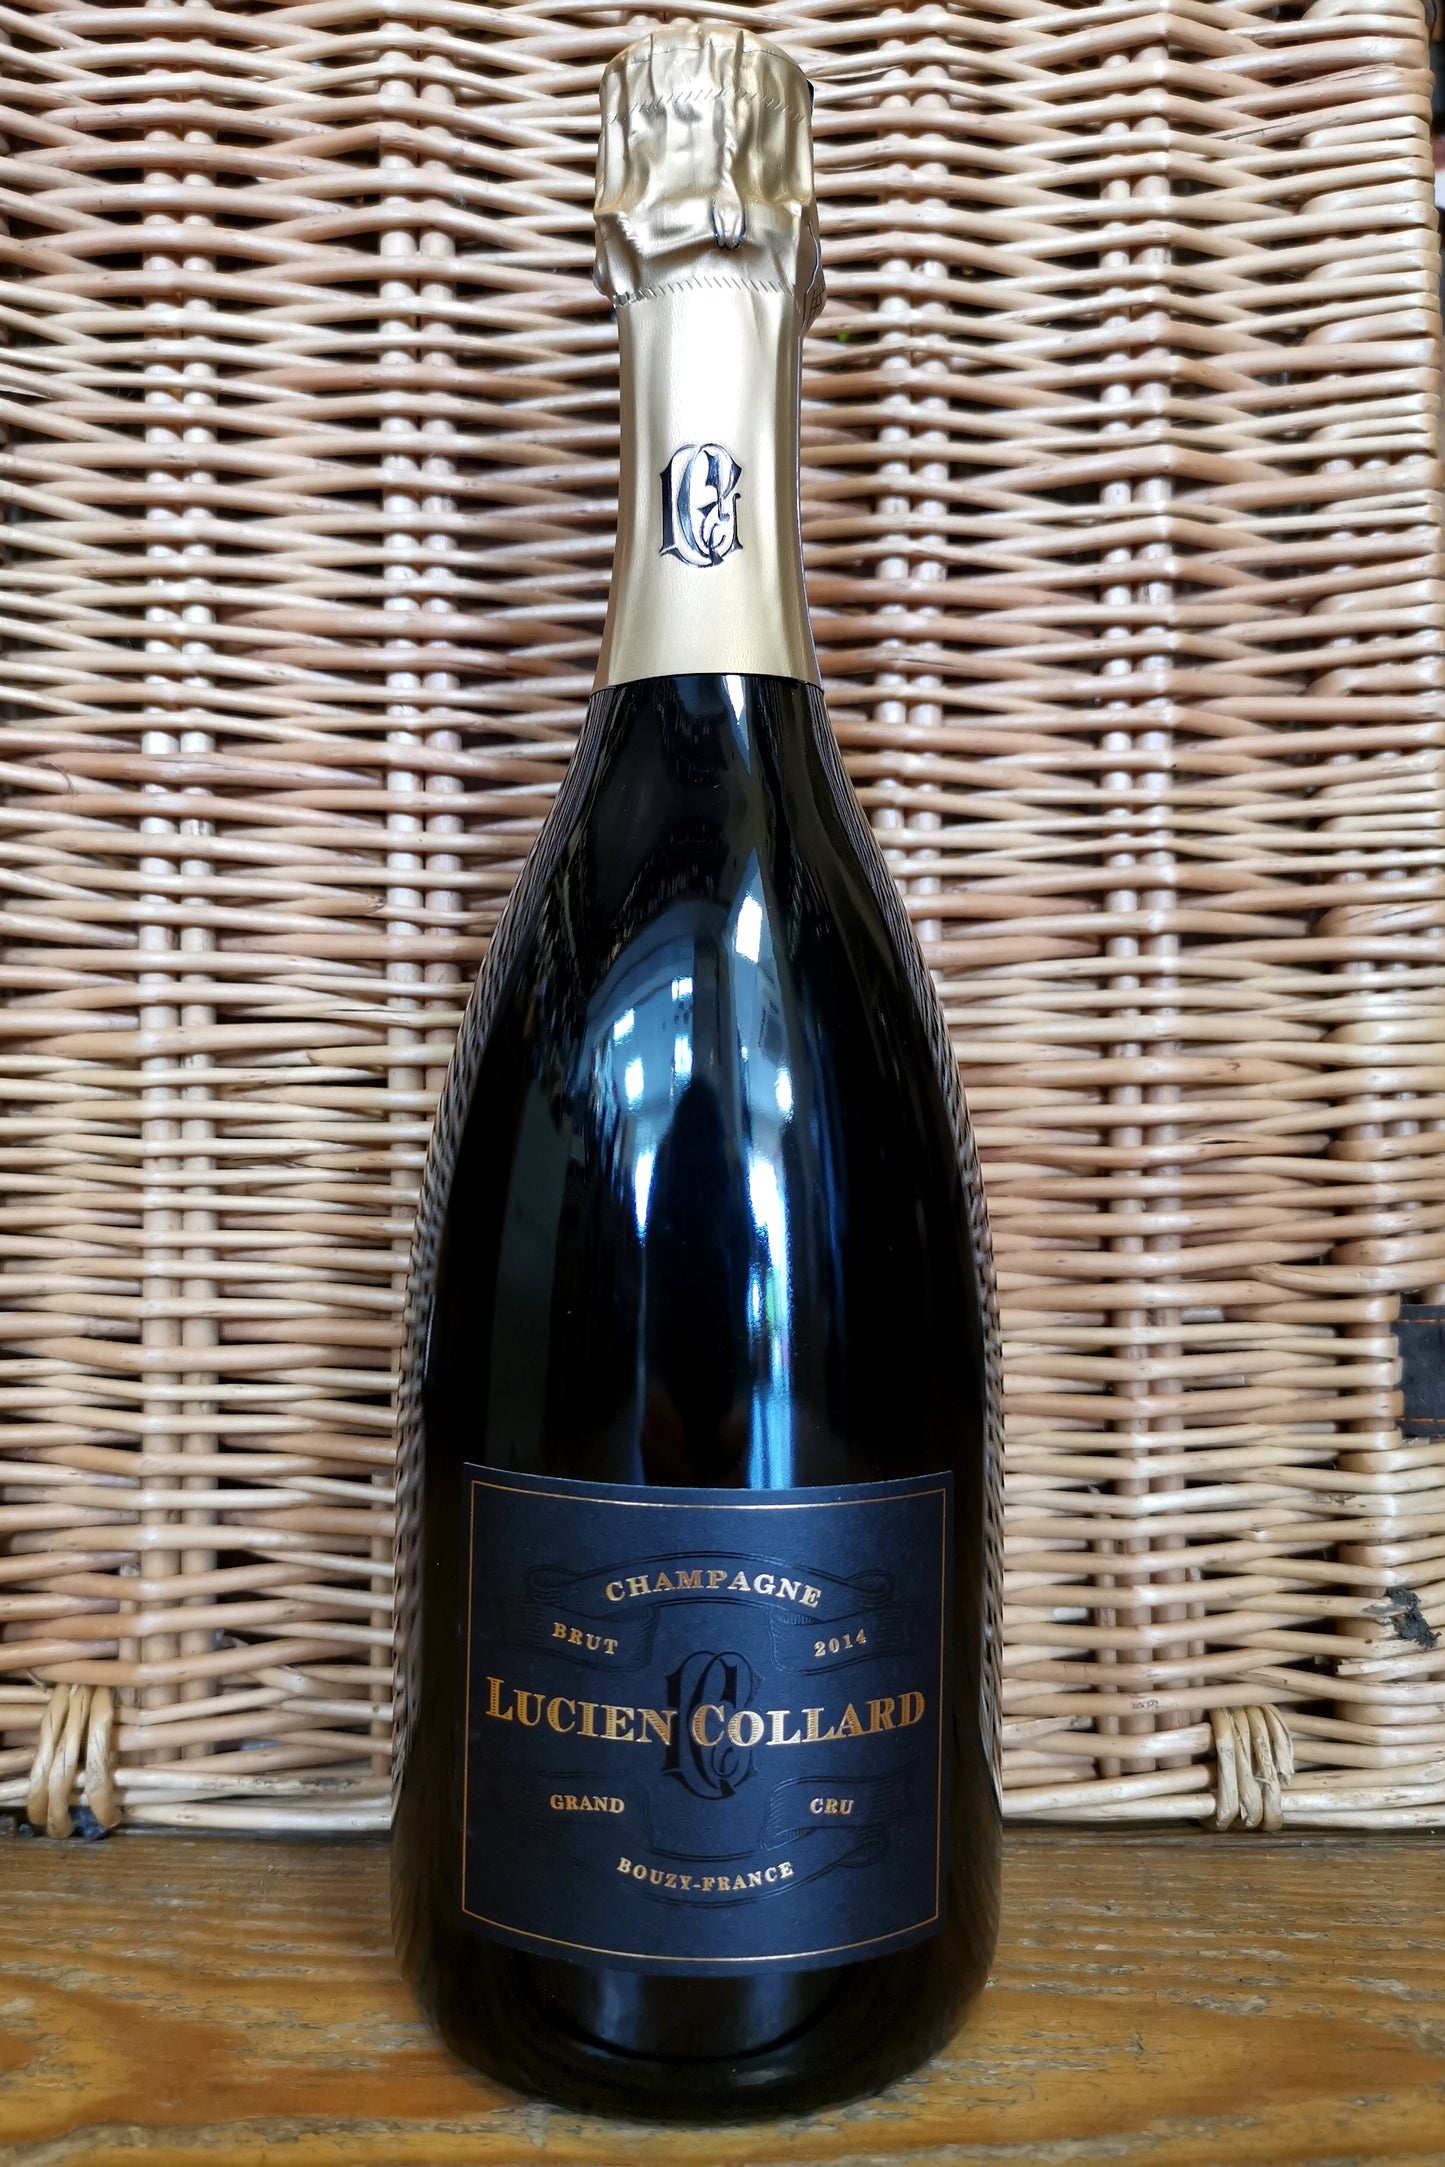 Champagne Lucien Collard, Grand Cru Brut, 2014